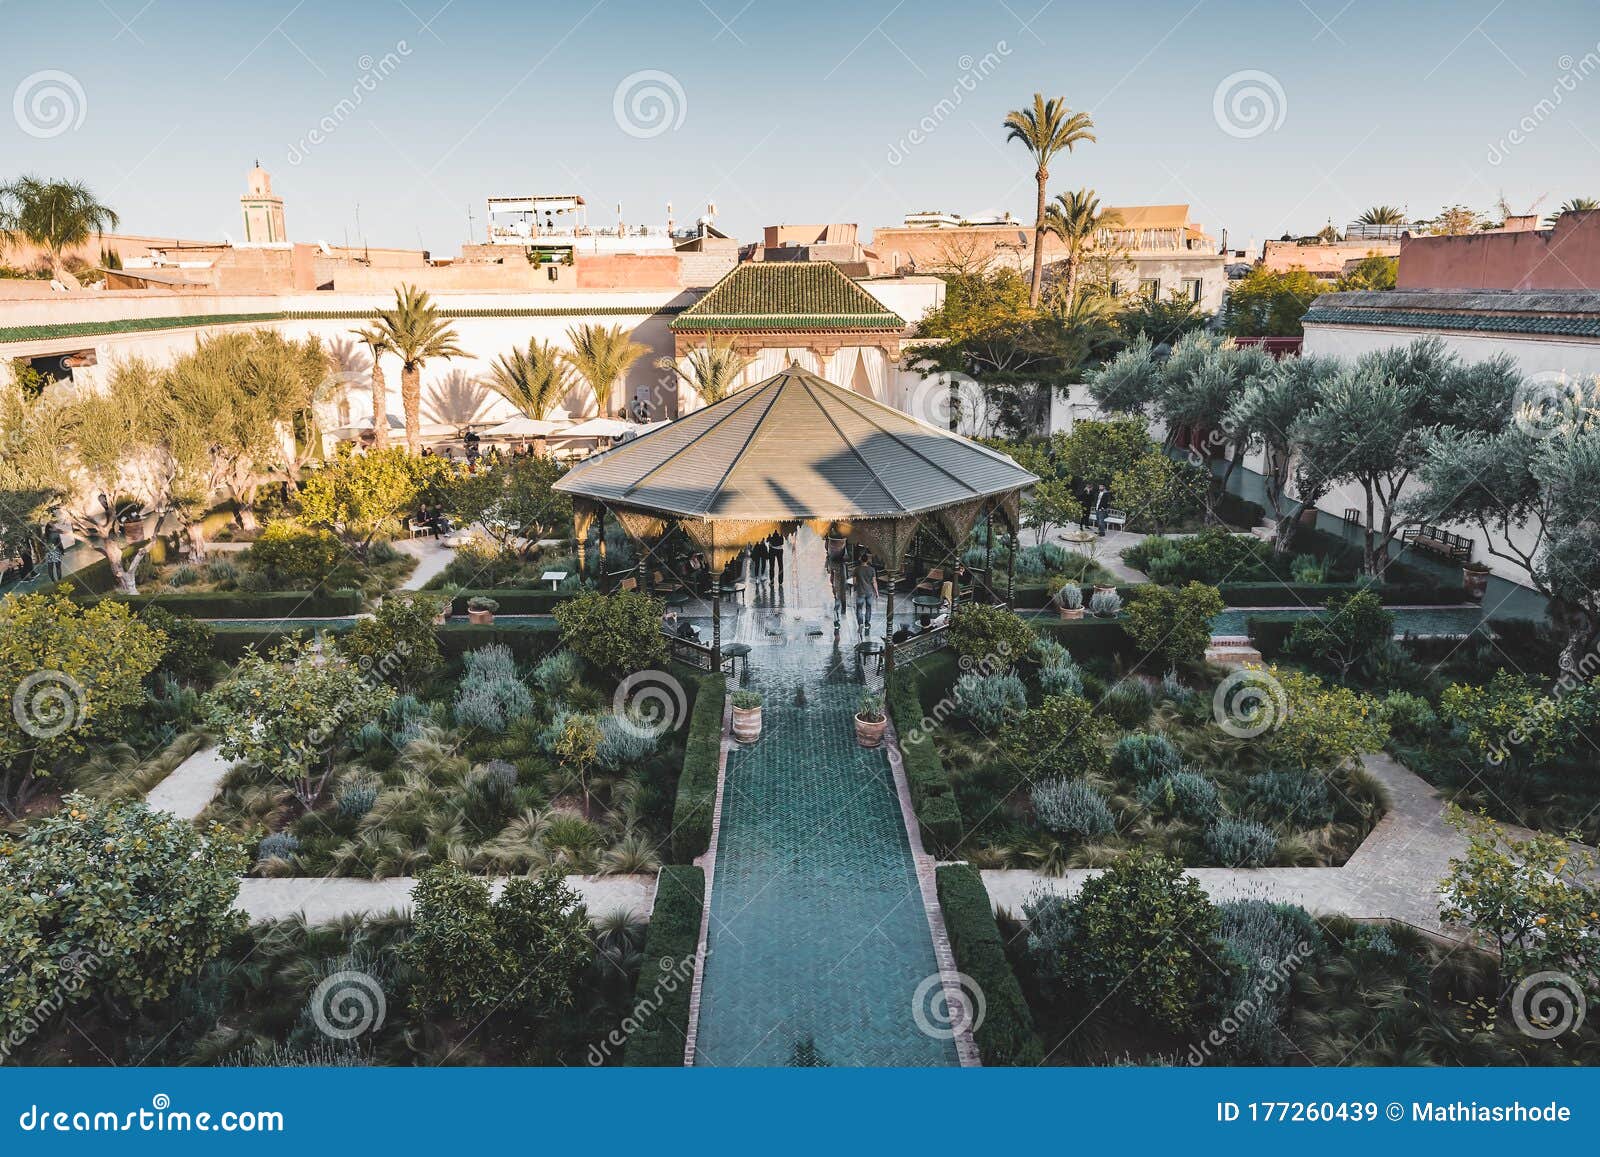 le jardin secret garden, marrakech, morocco old madina, marrakech, morocco.